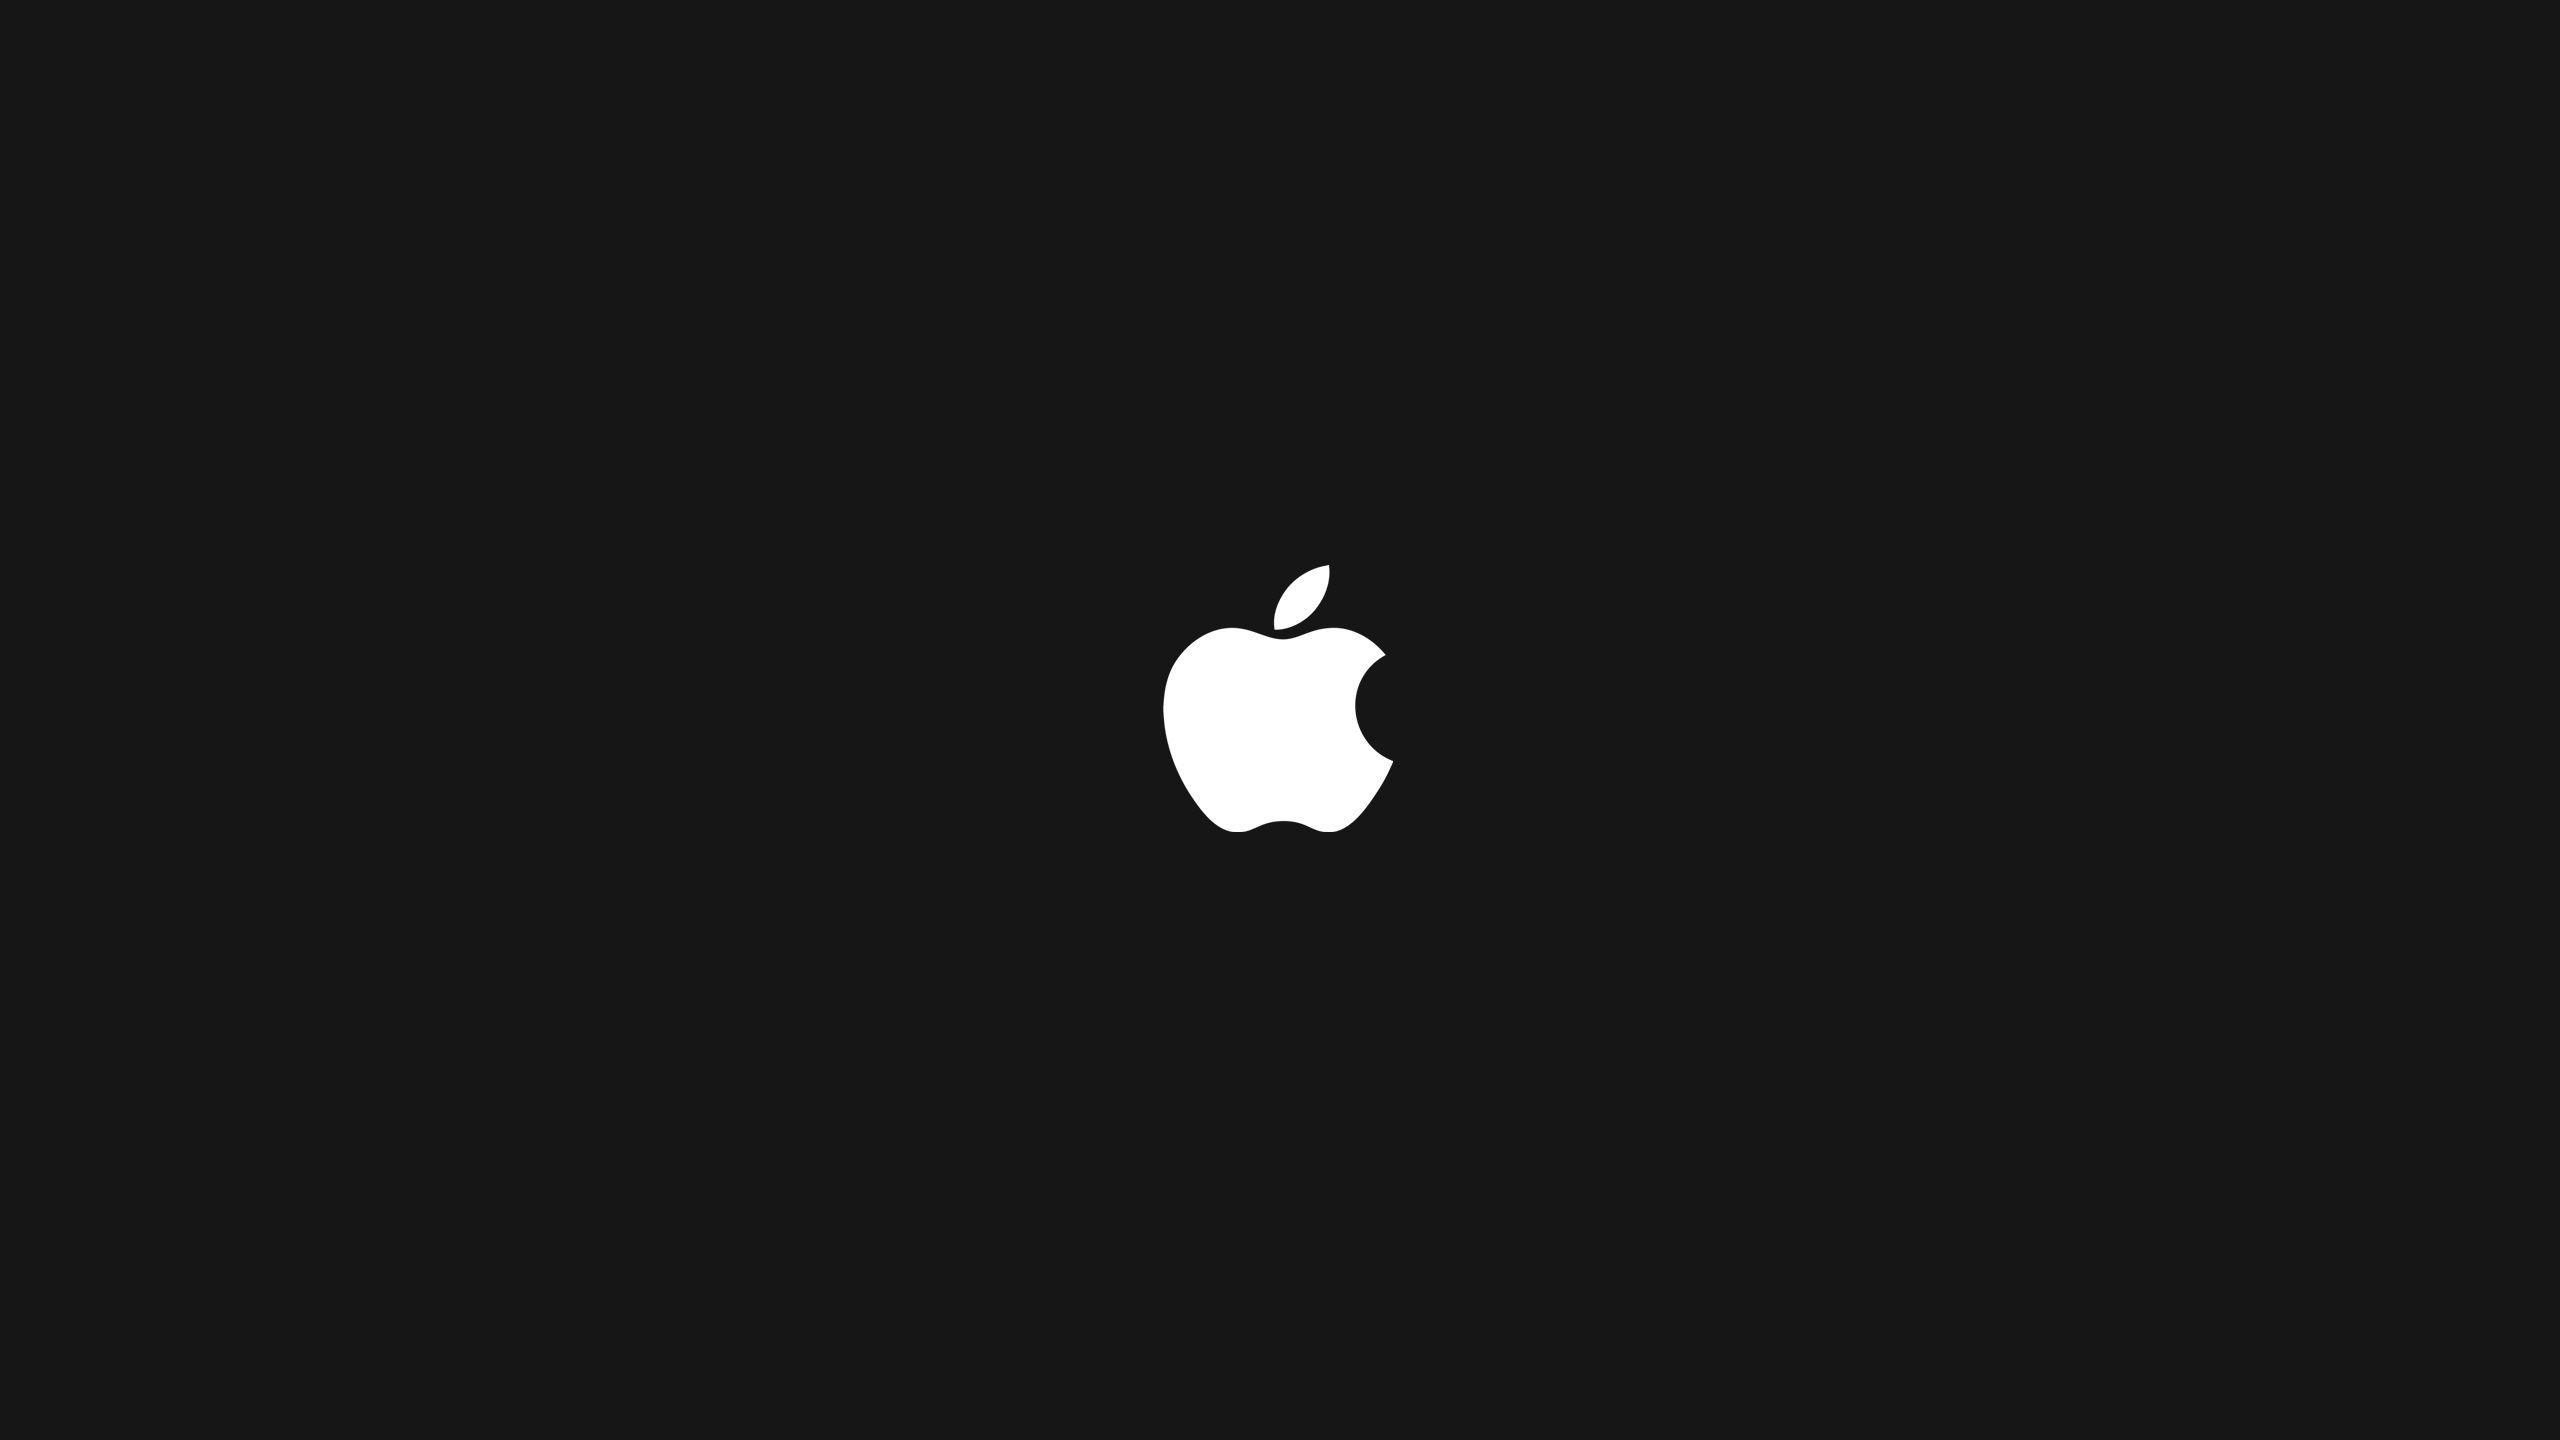 Logo apple wallpapers hd